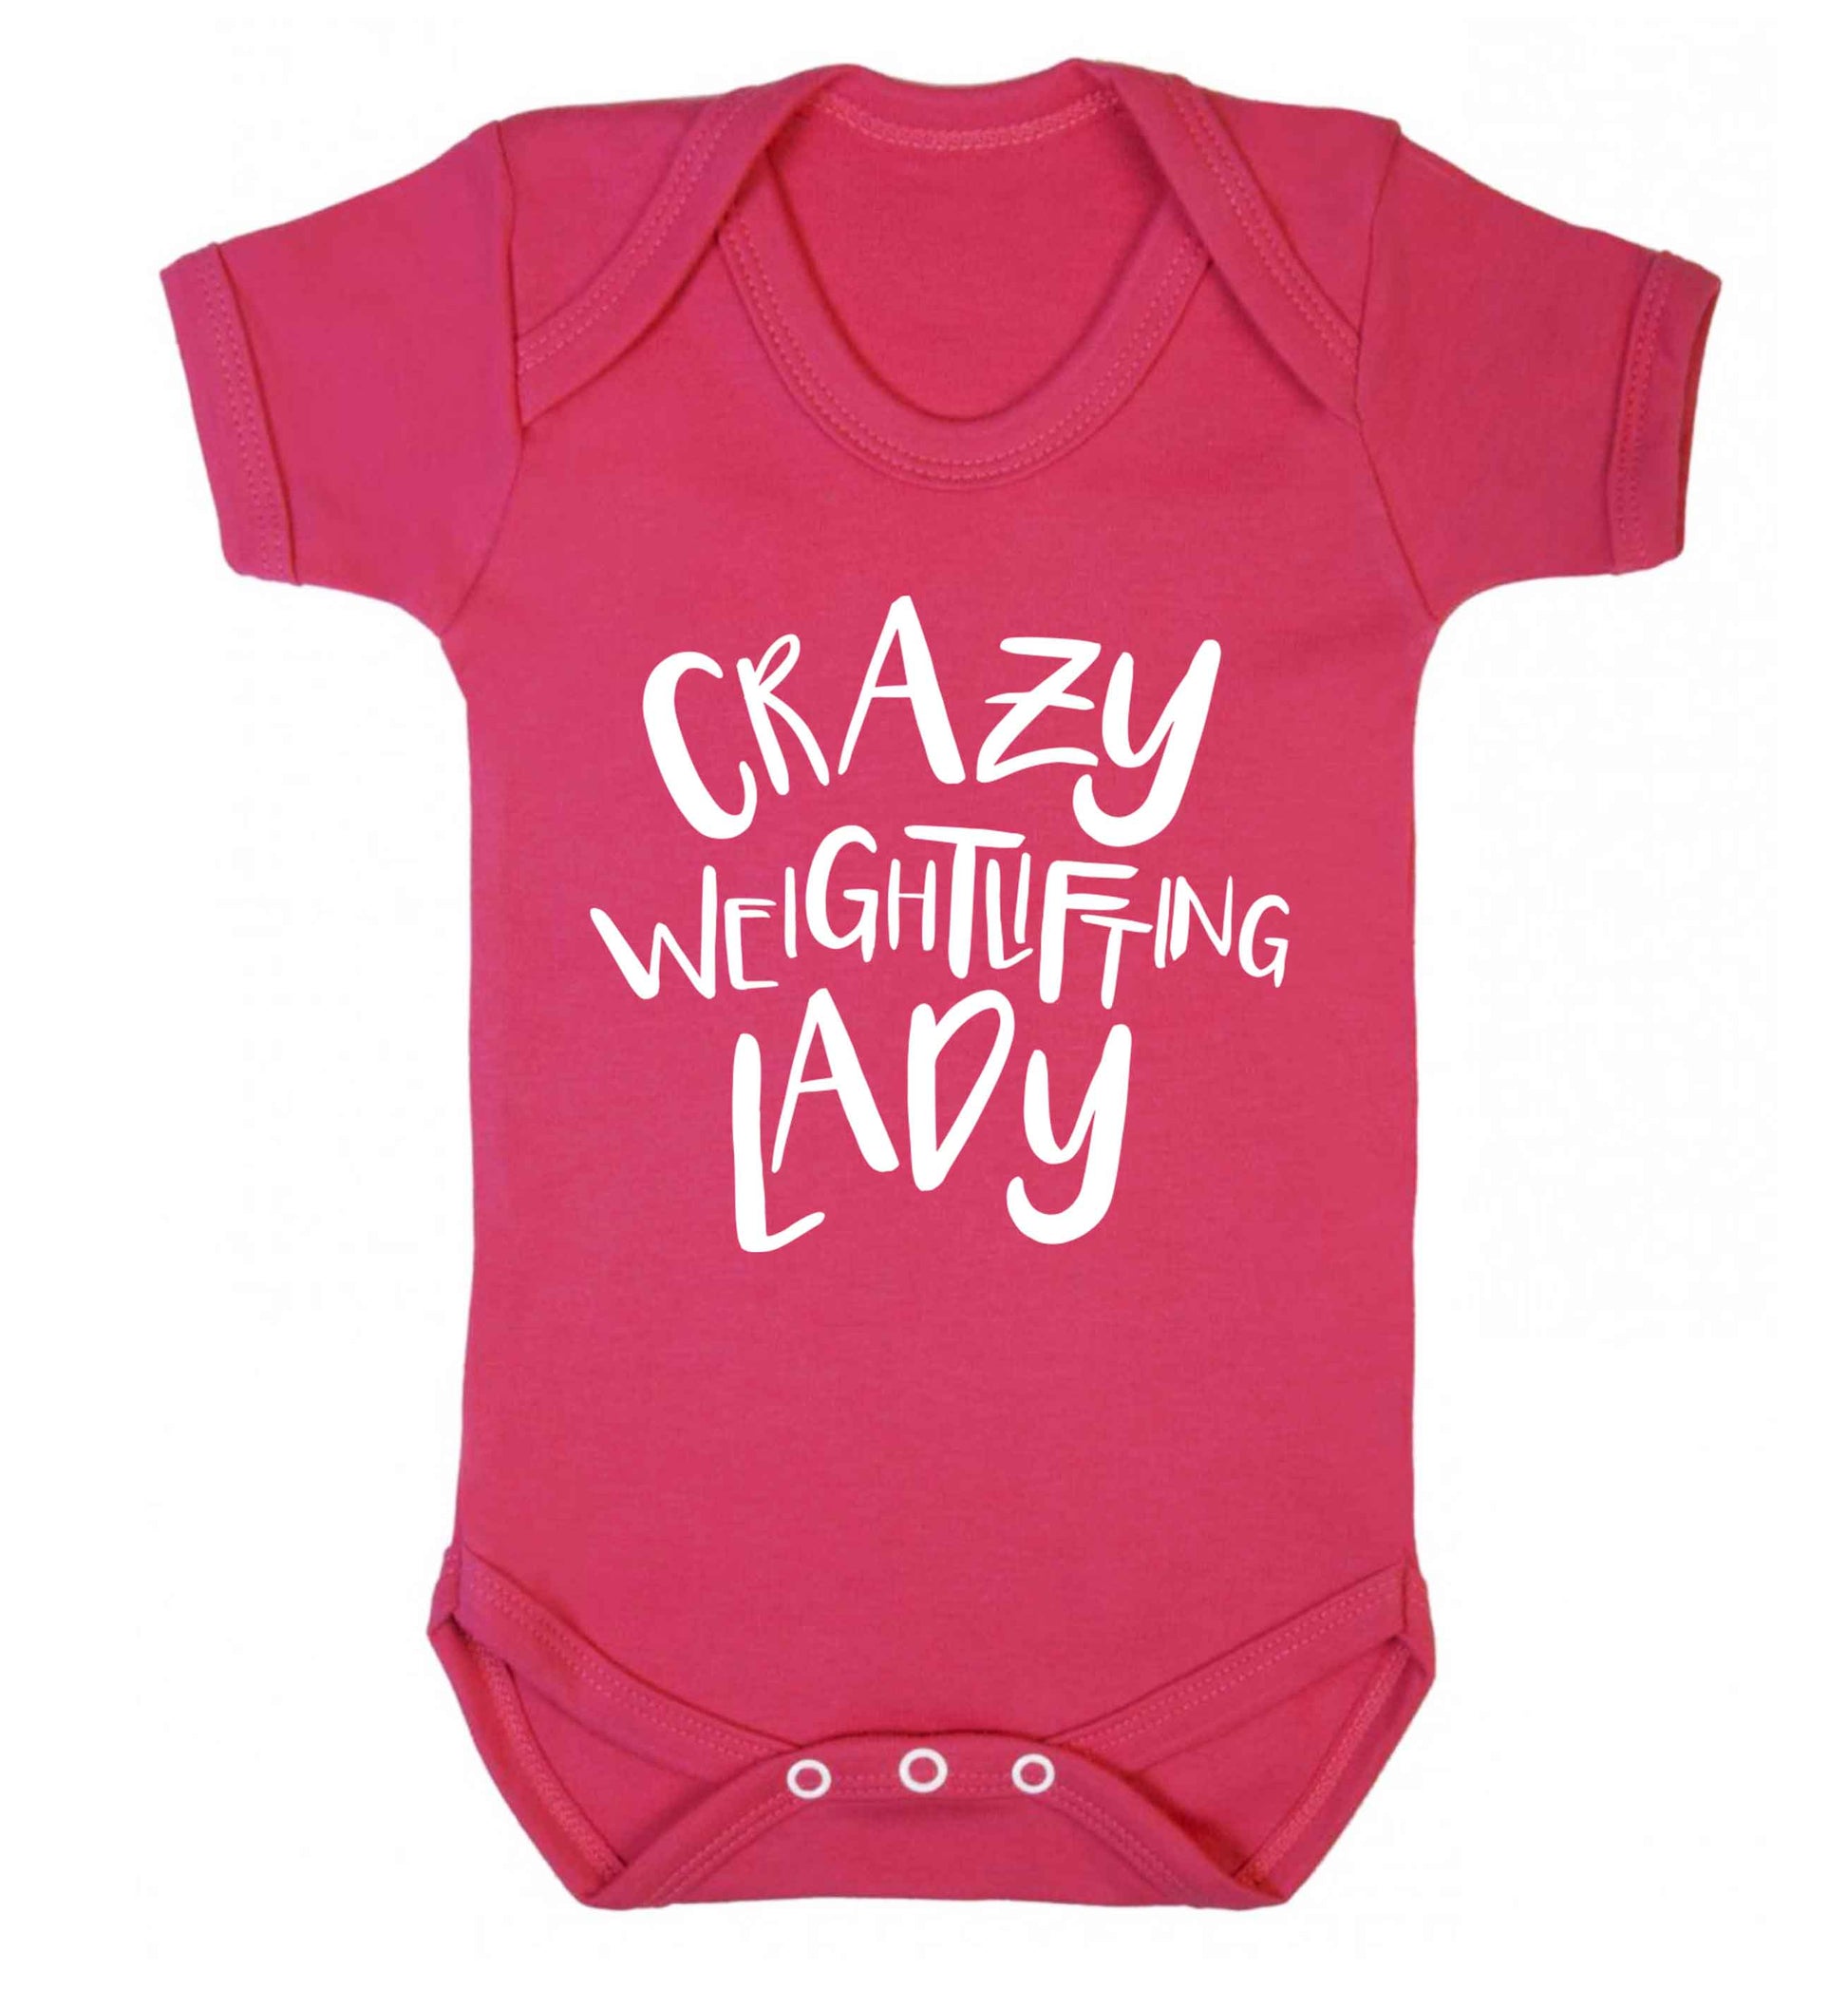 Crazy weightlifting lady Baby Vest dark pink 18-24 months